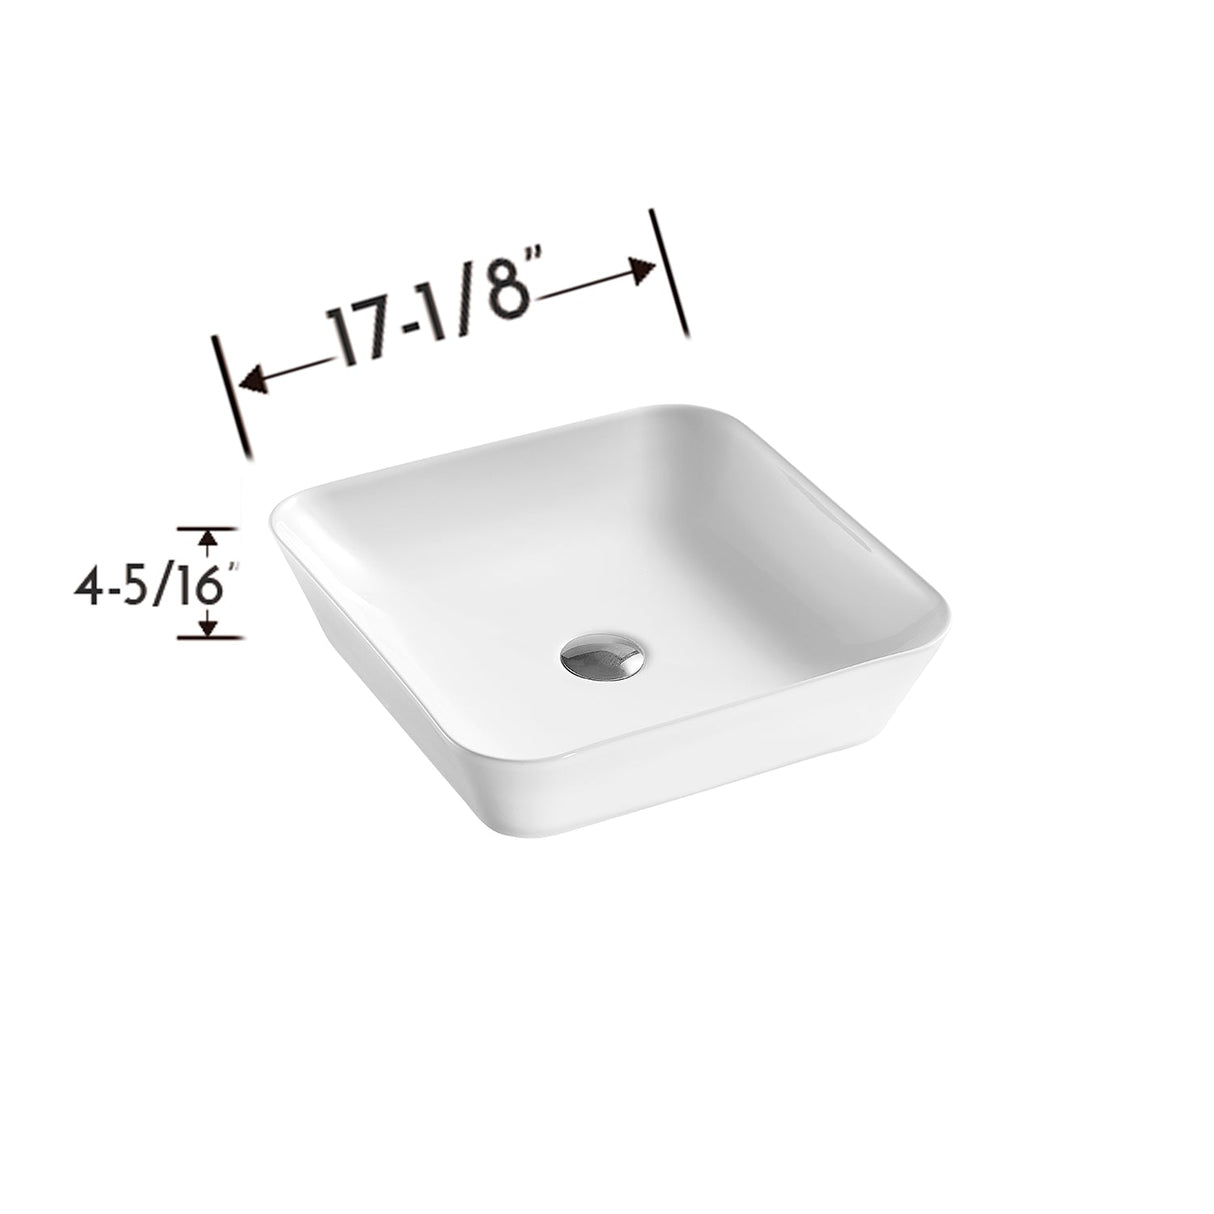 DAX Ceramic Square Bathroom Vessel Basin, White Matte DAX-CL1468-WM